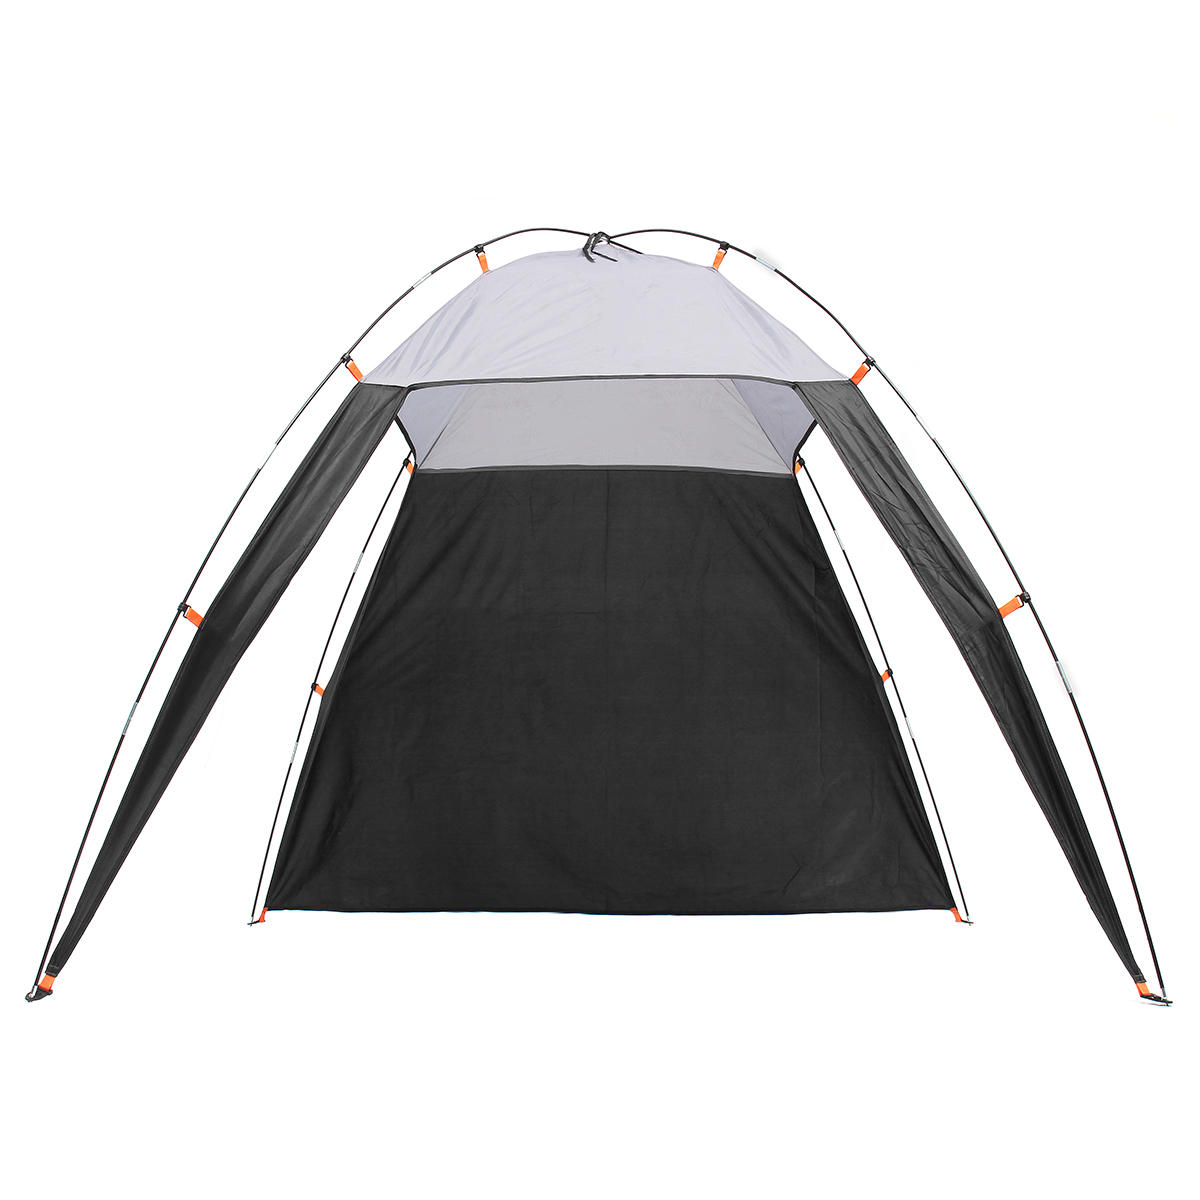 Tienda de campaña triangular impermeable y con protección solar para 5-8 personas, ideal para camping y senderismo en la playa al aire libre.